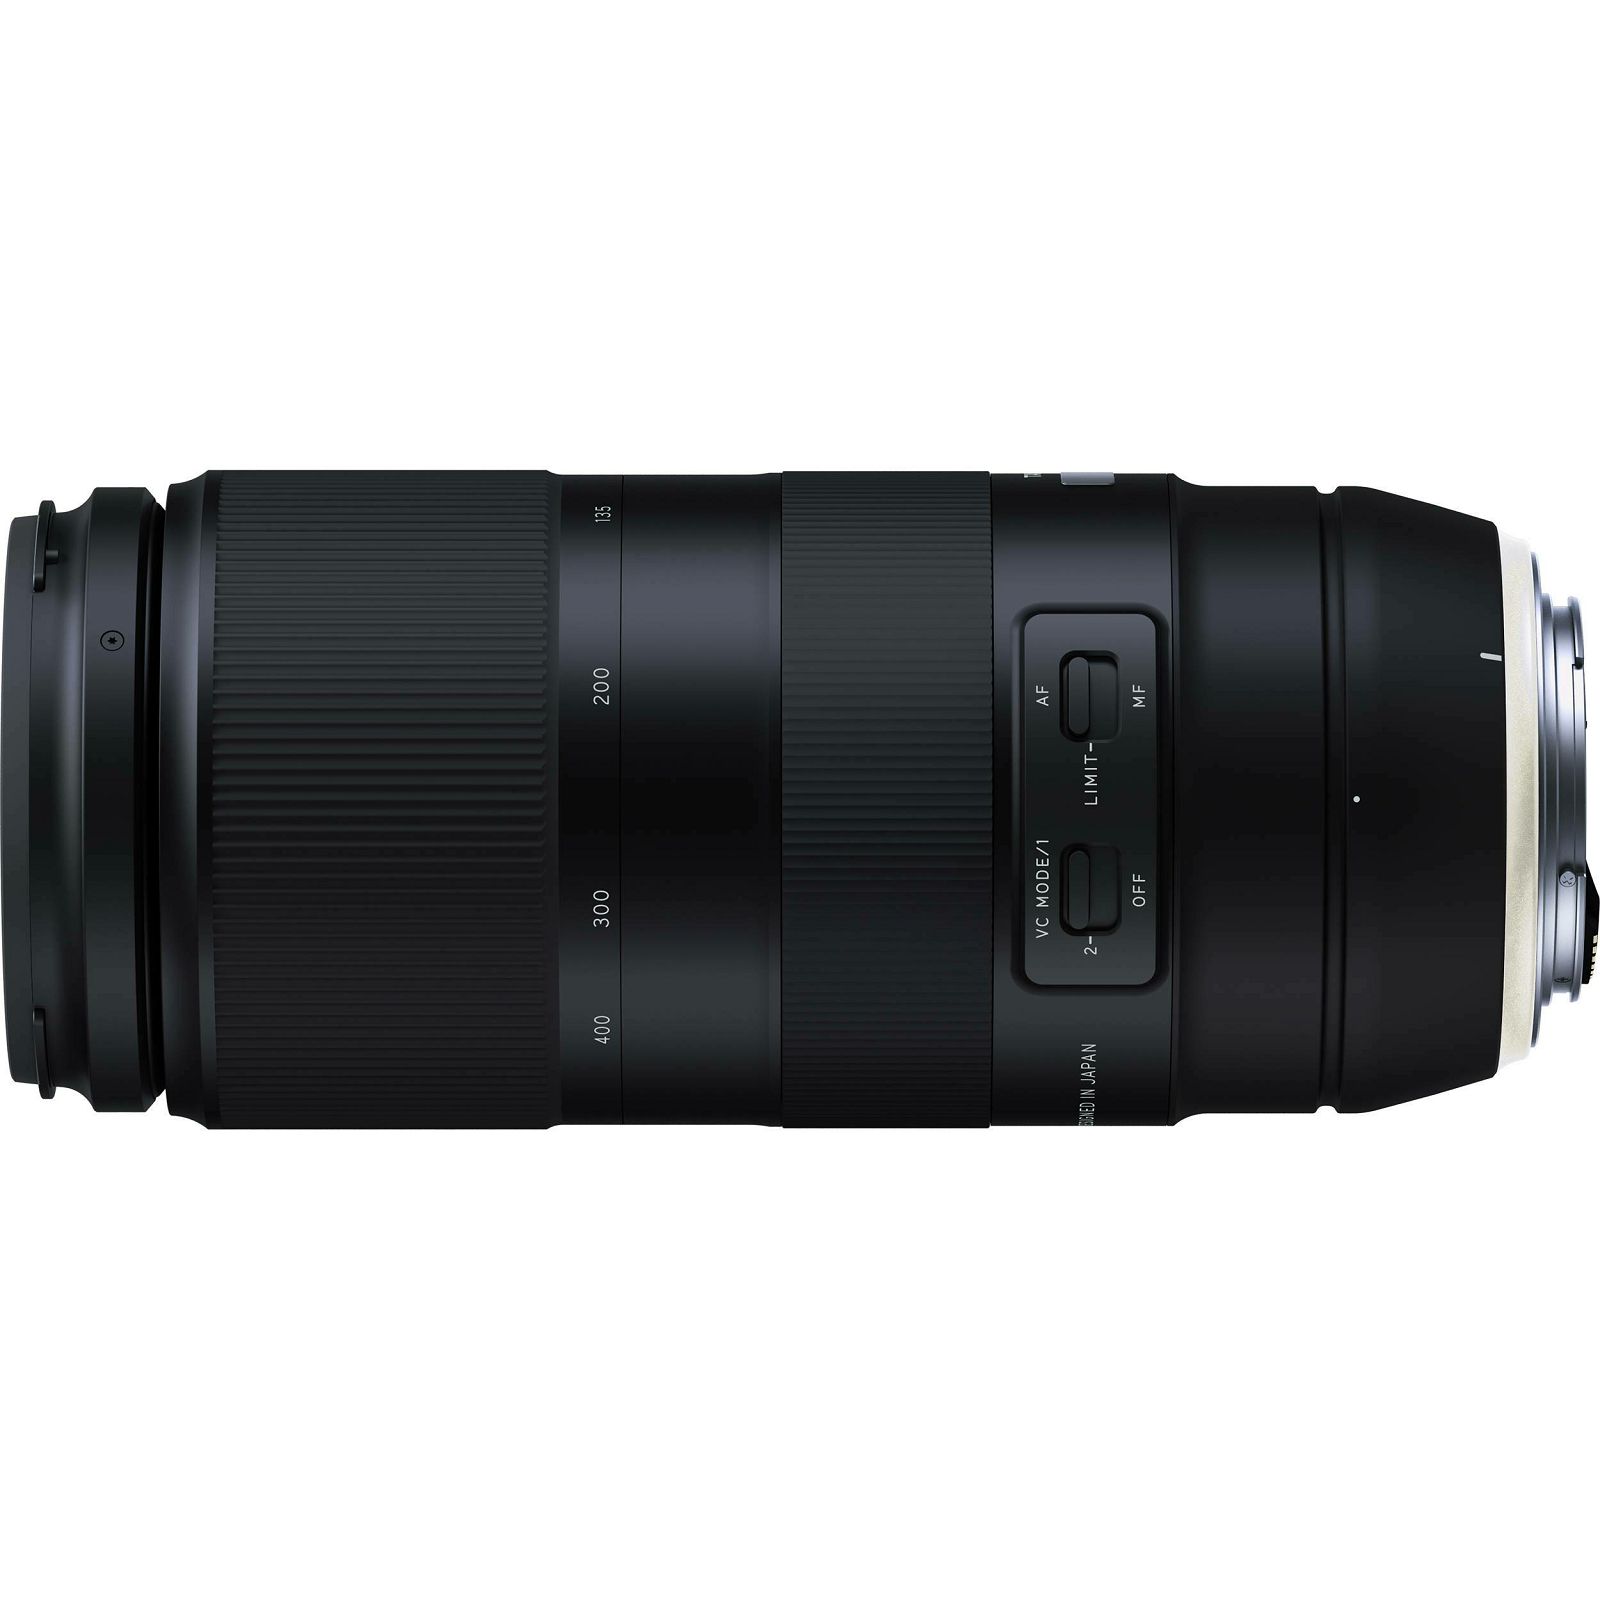 Tamron AF 100-400mm f/4.5-6.3 Di VC USD objektiv za Canon EF (A035E)